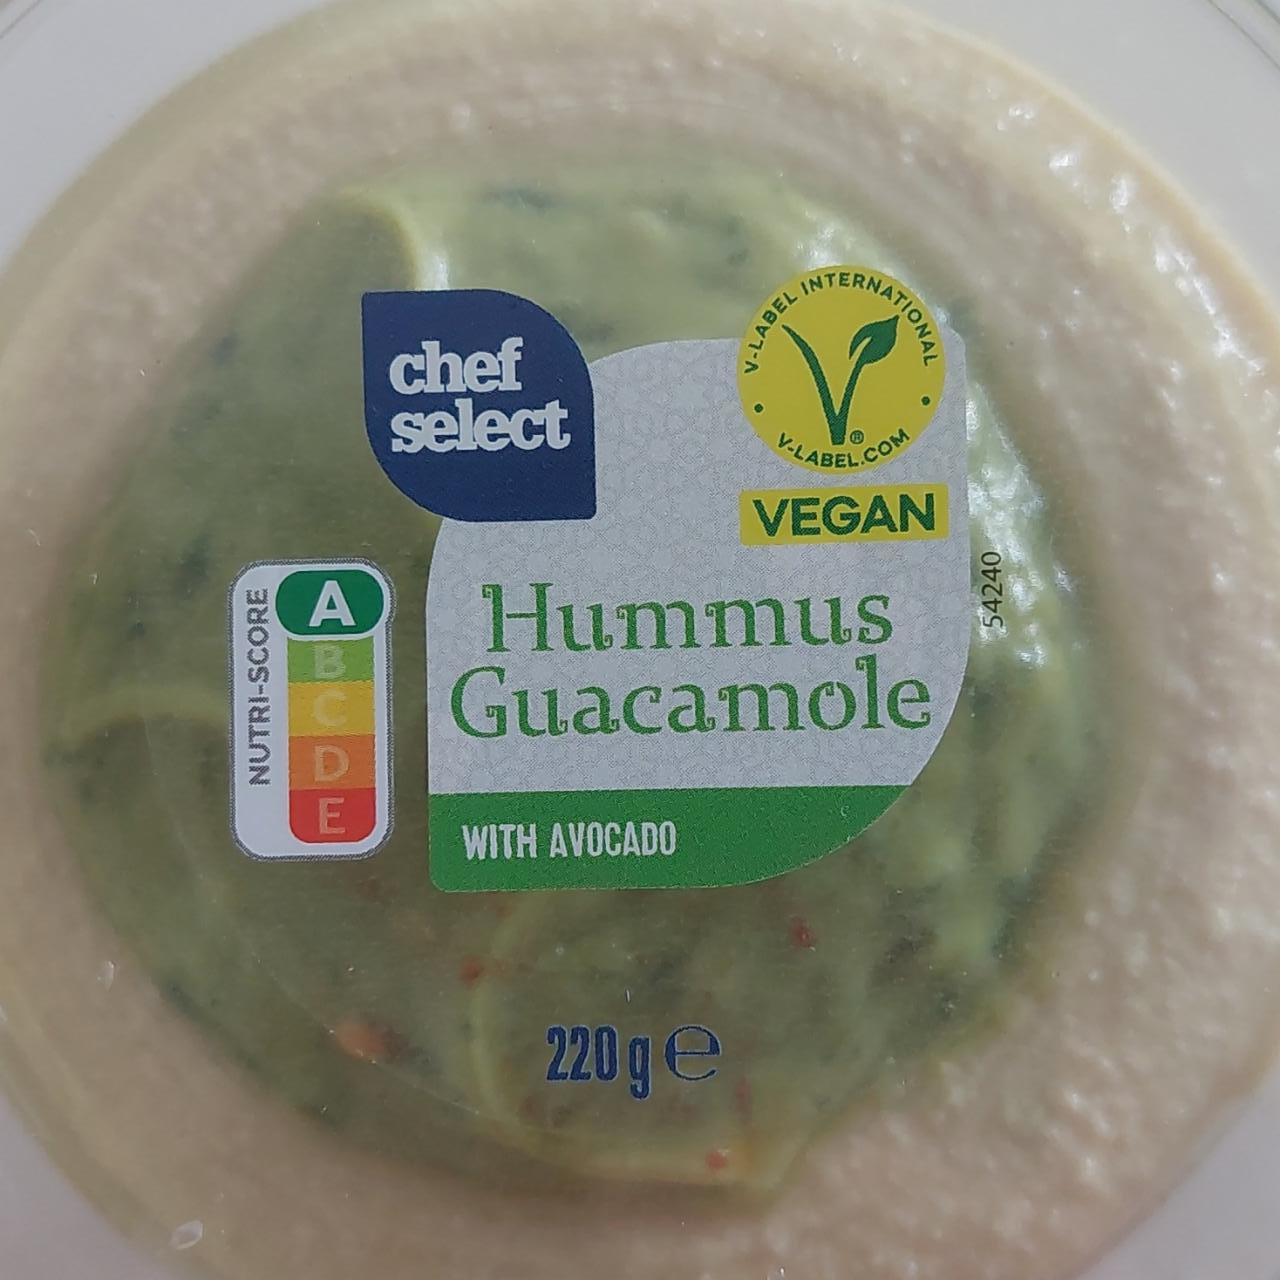 Képek - Hummus Guacamole with avocado Chef select